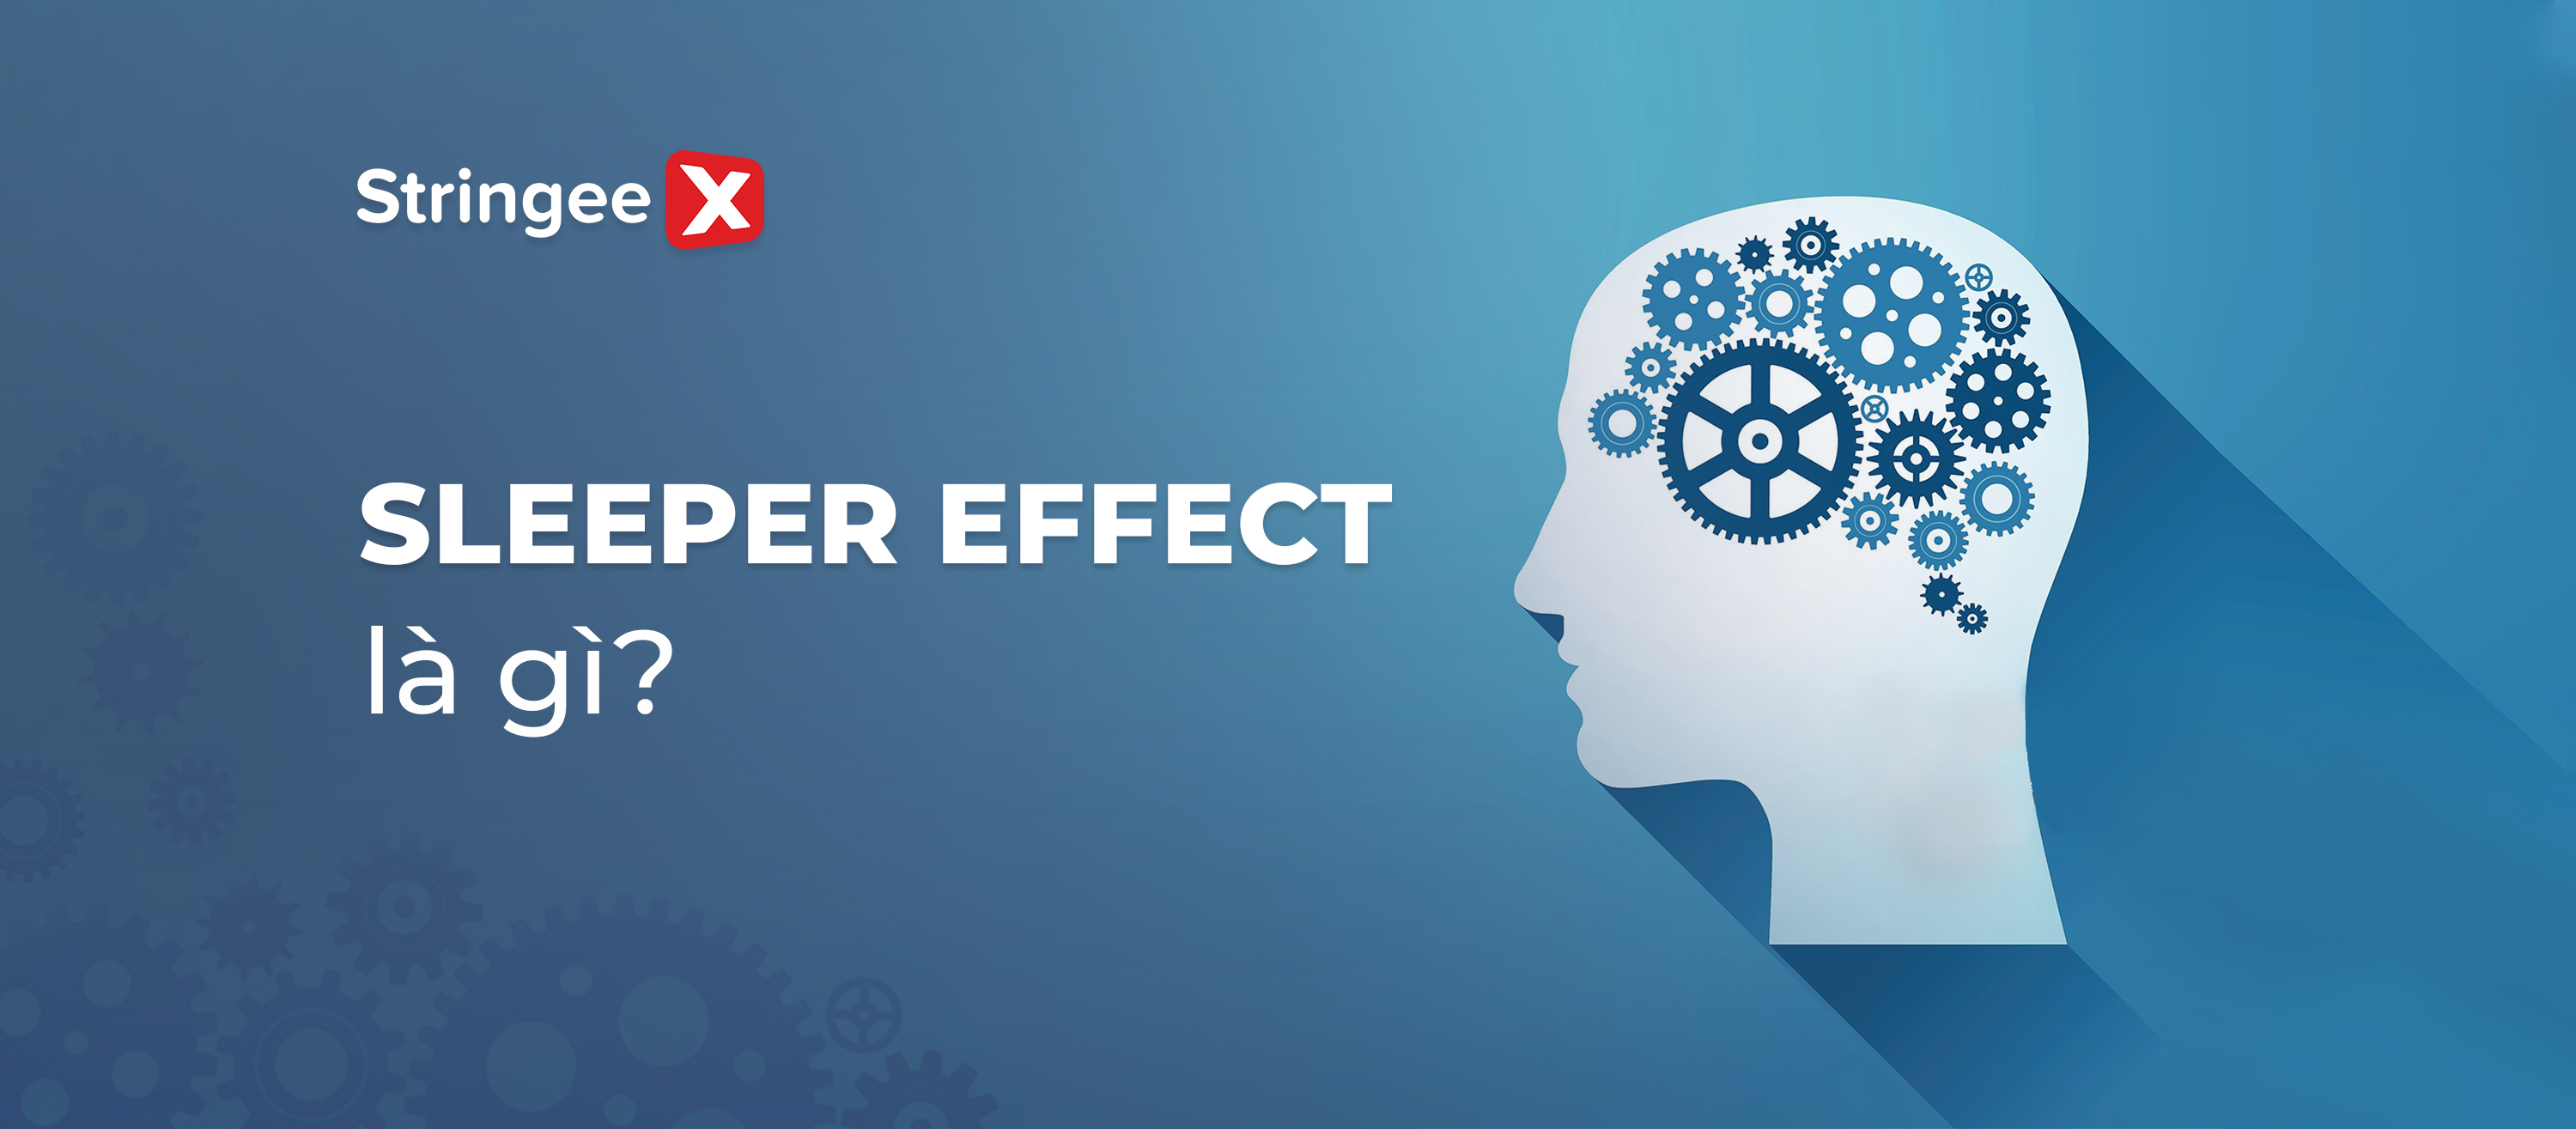 Sleeper Effect là gì? Vai trò của hiệu ứng Sleeper Effect trong Marketing